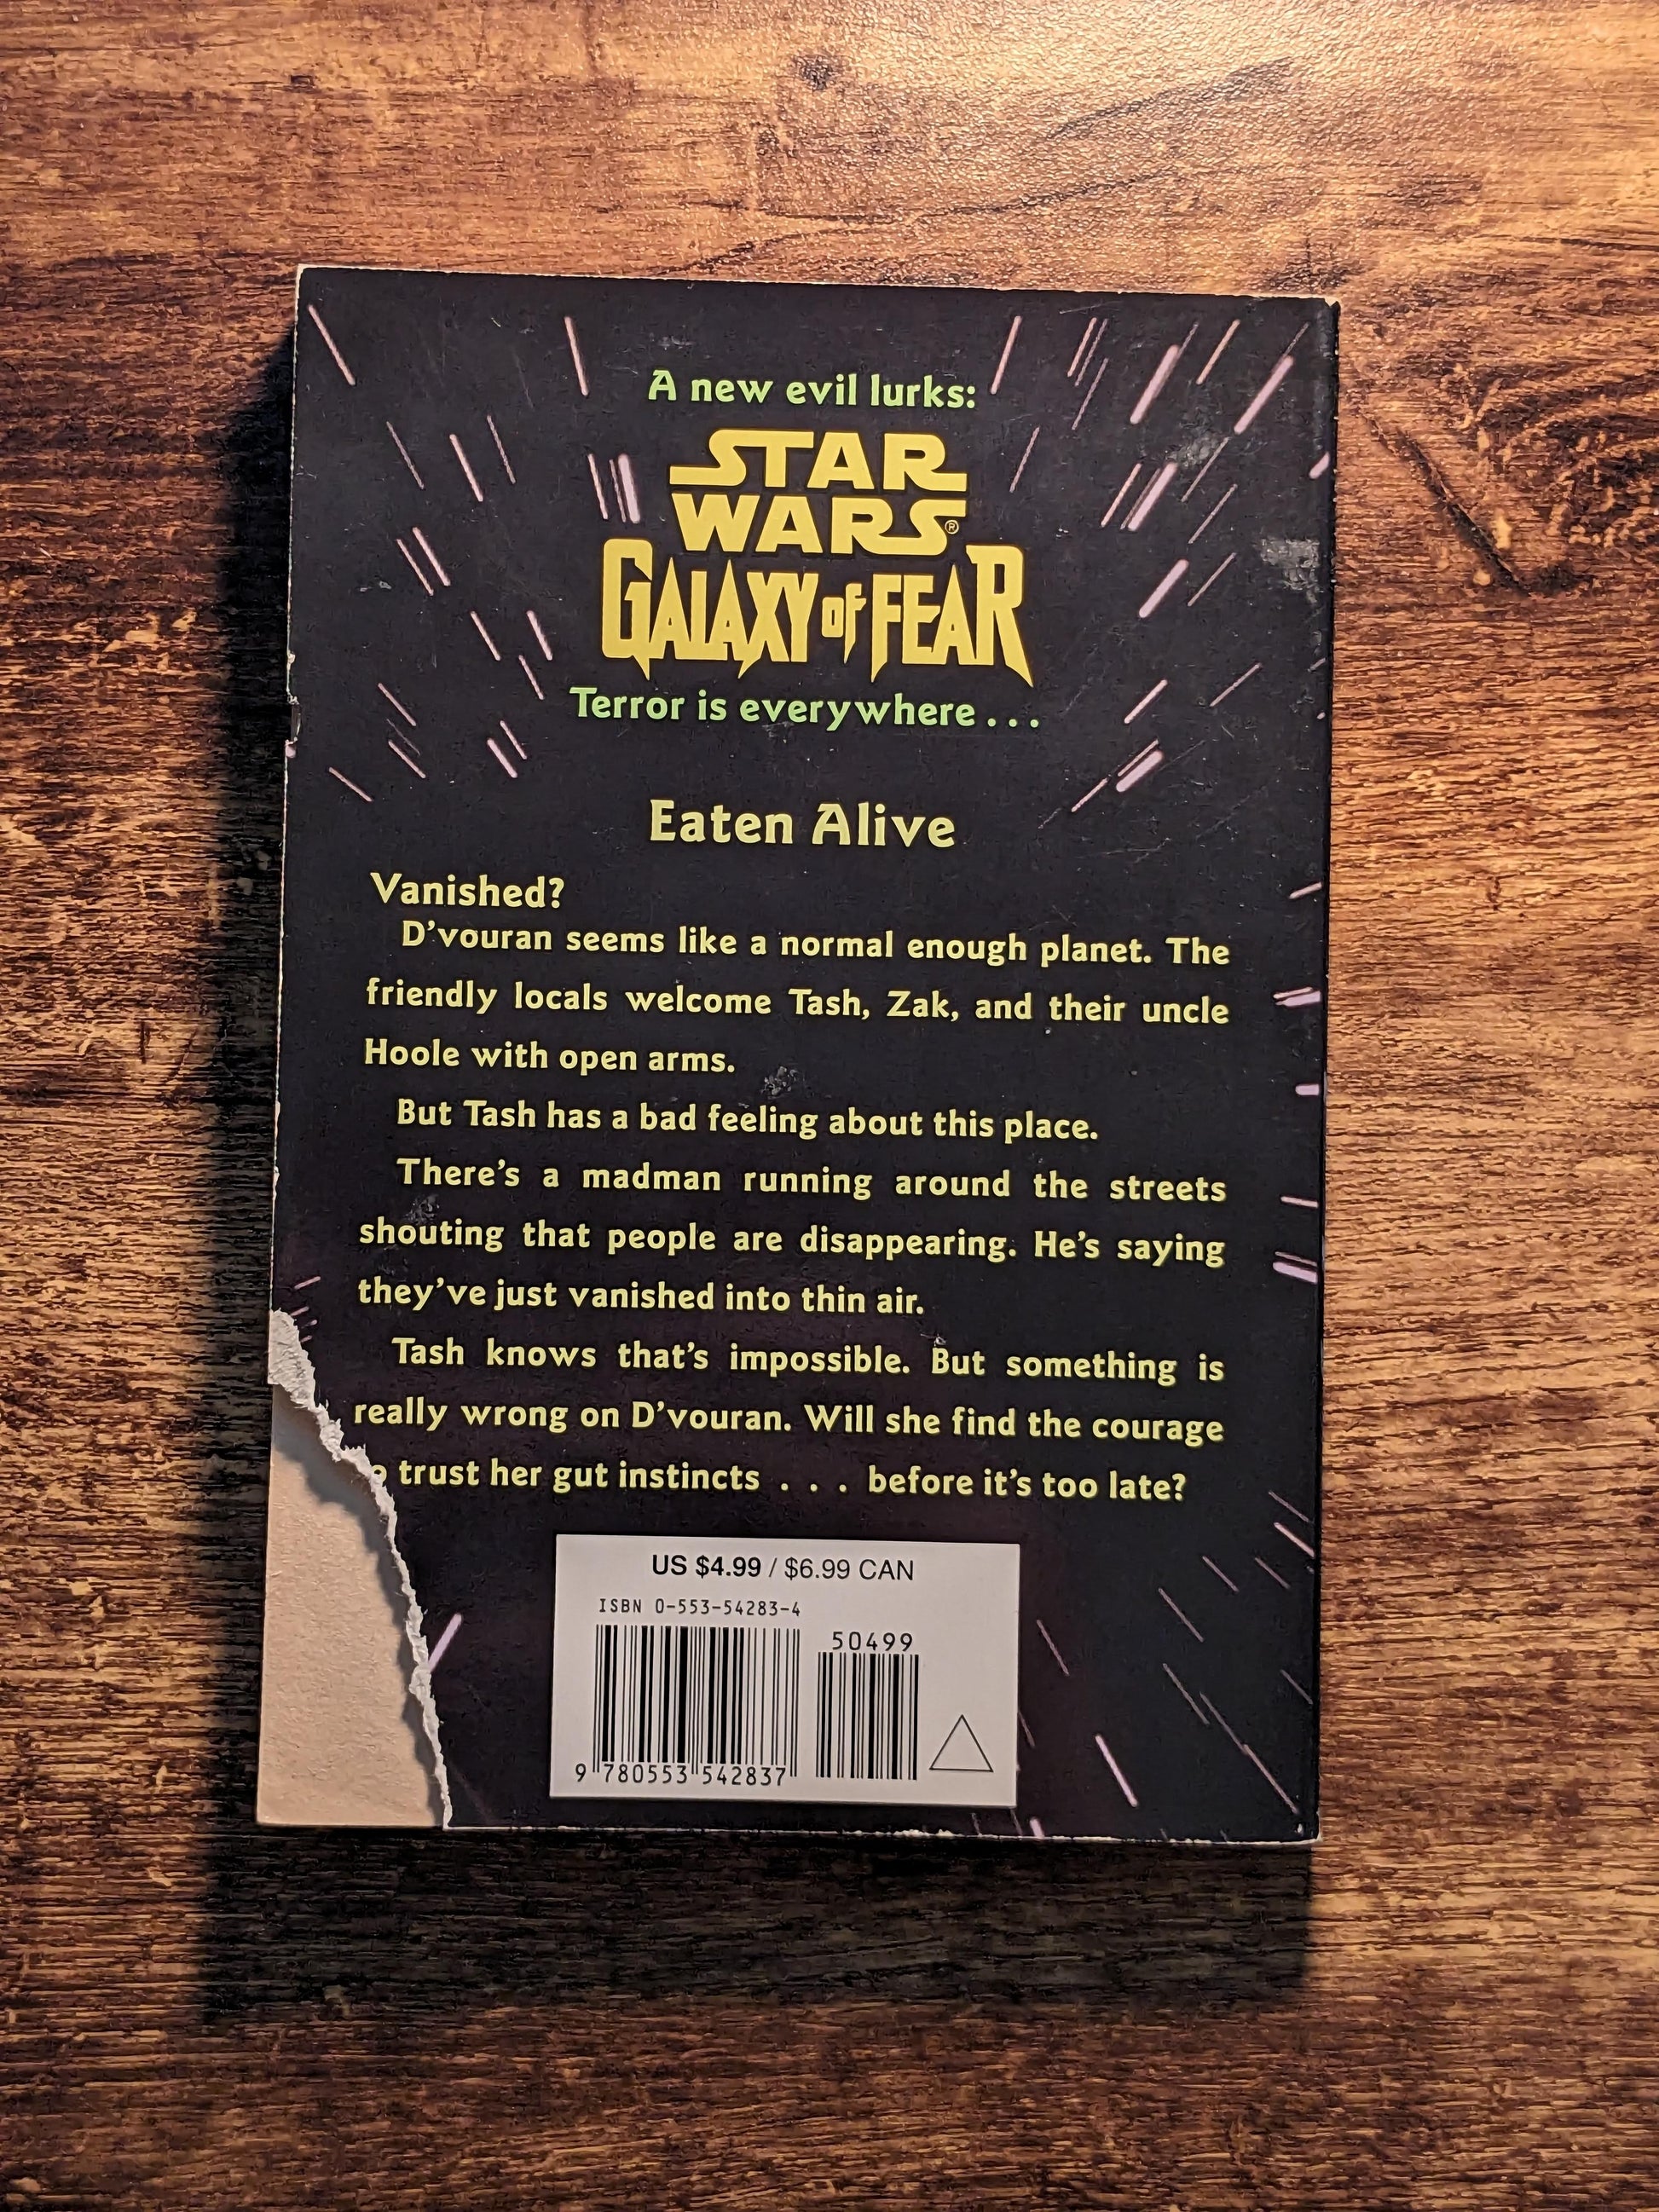 Eaten Alive (Star Wars Galaxy of Fear) by John Whitman - Asylum Books